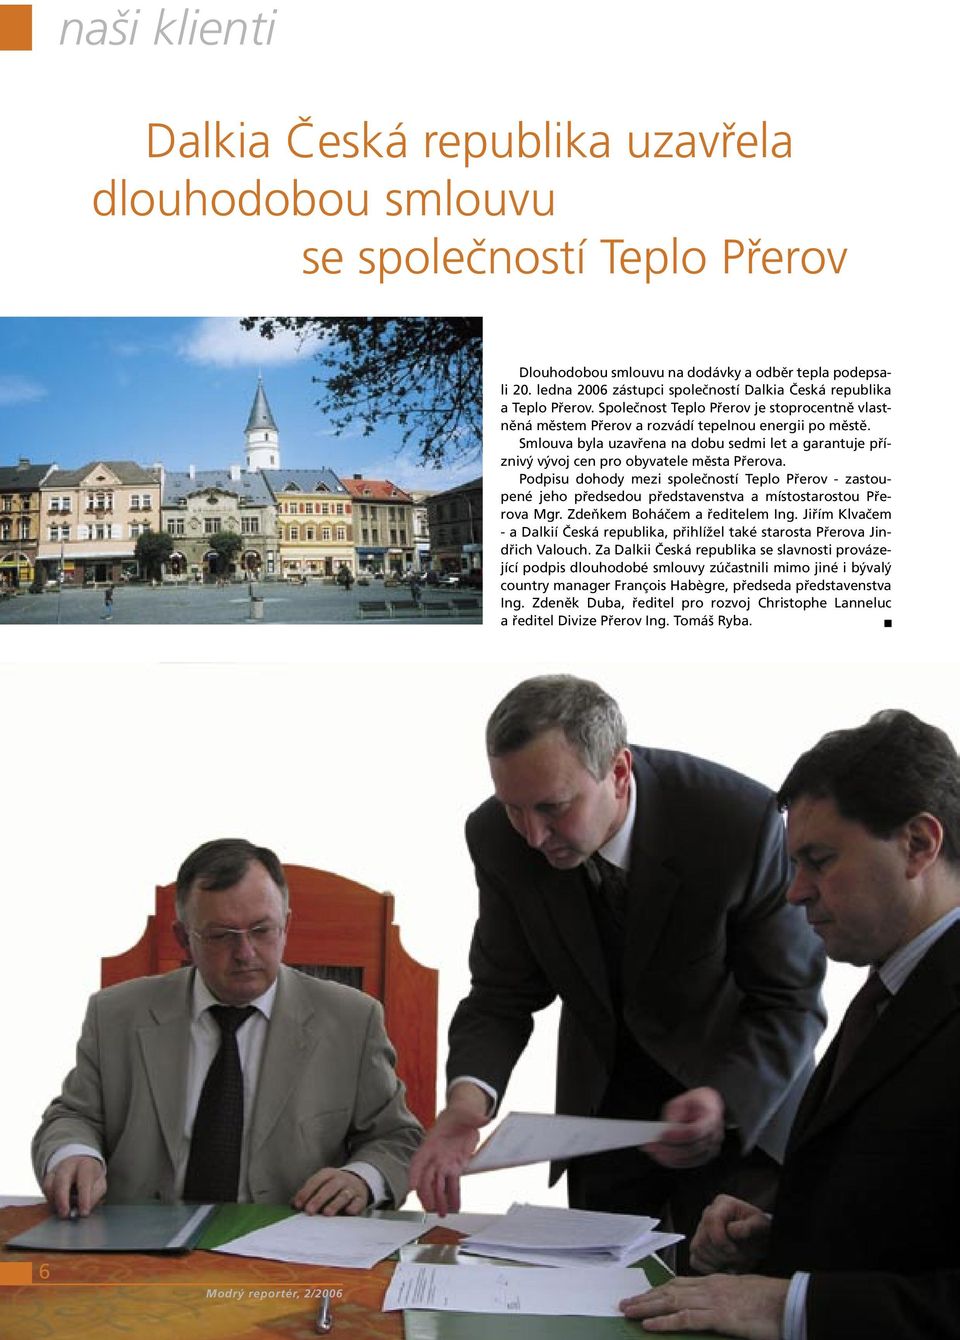 Smlouva byla uzavřena na dobu sedmi let a garantuje příznivý vývoj cen pro obyvatele města Přerova.